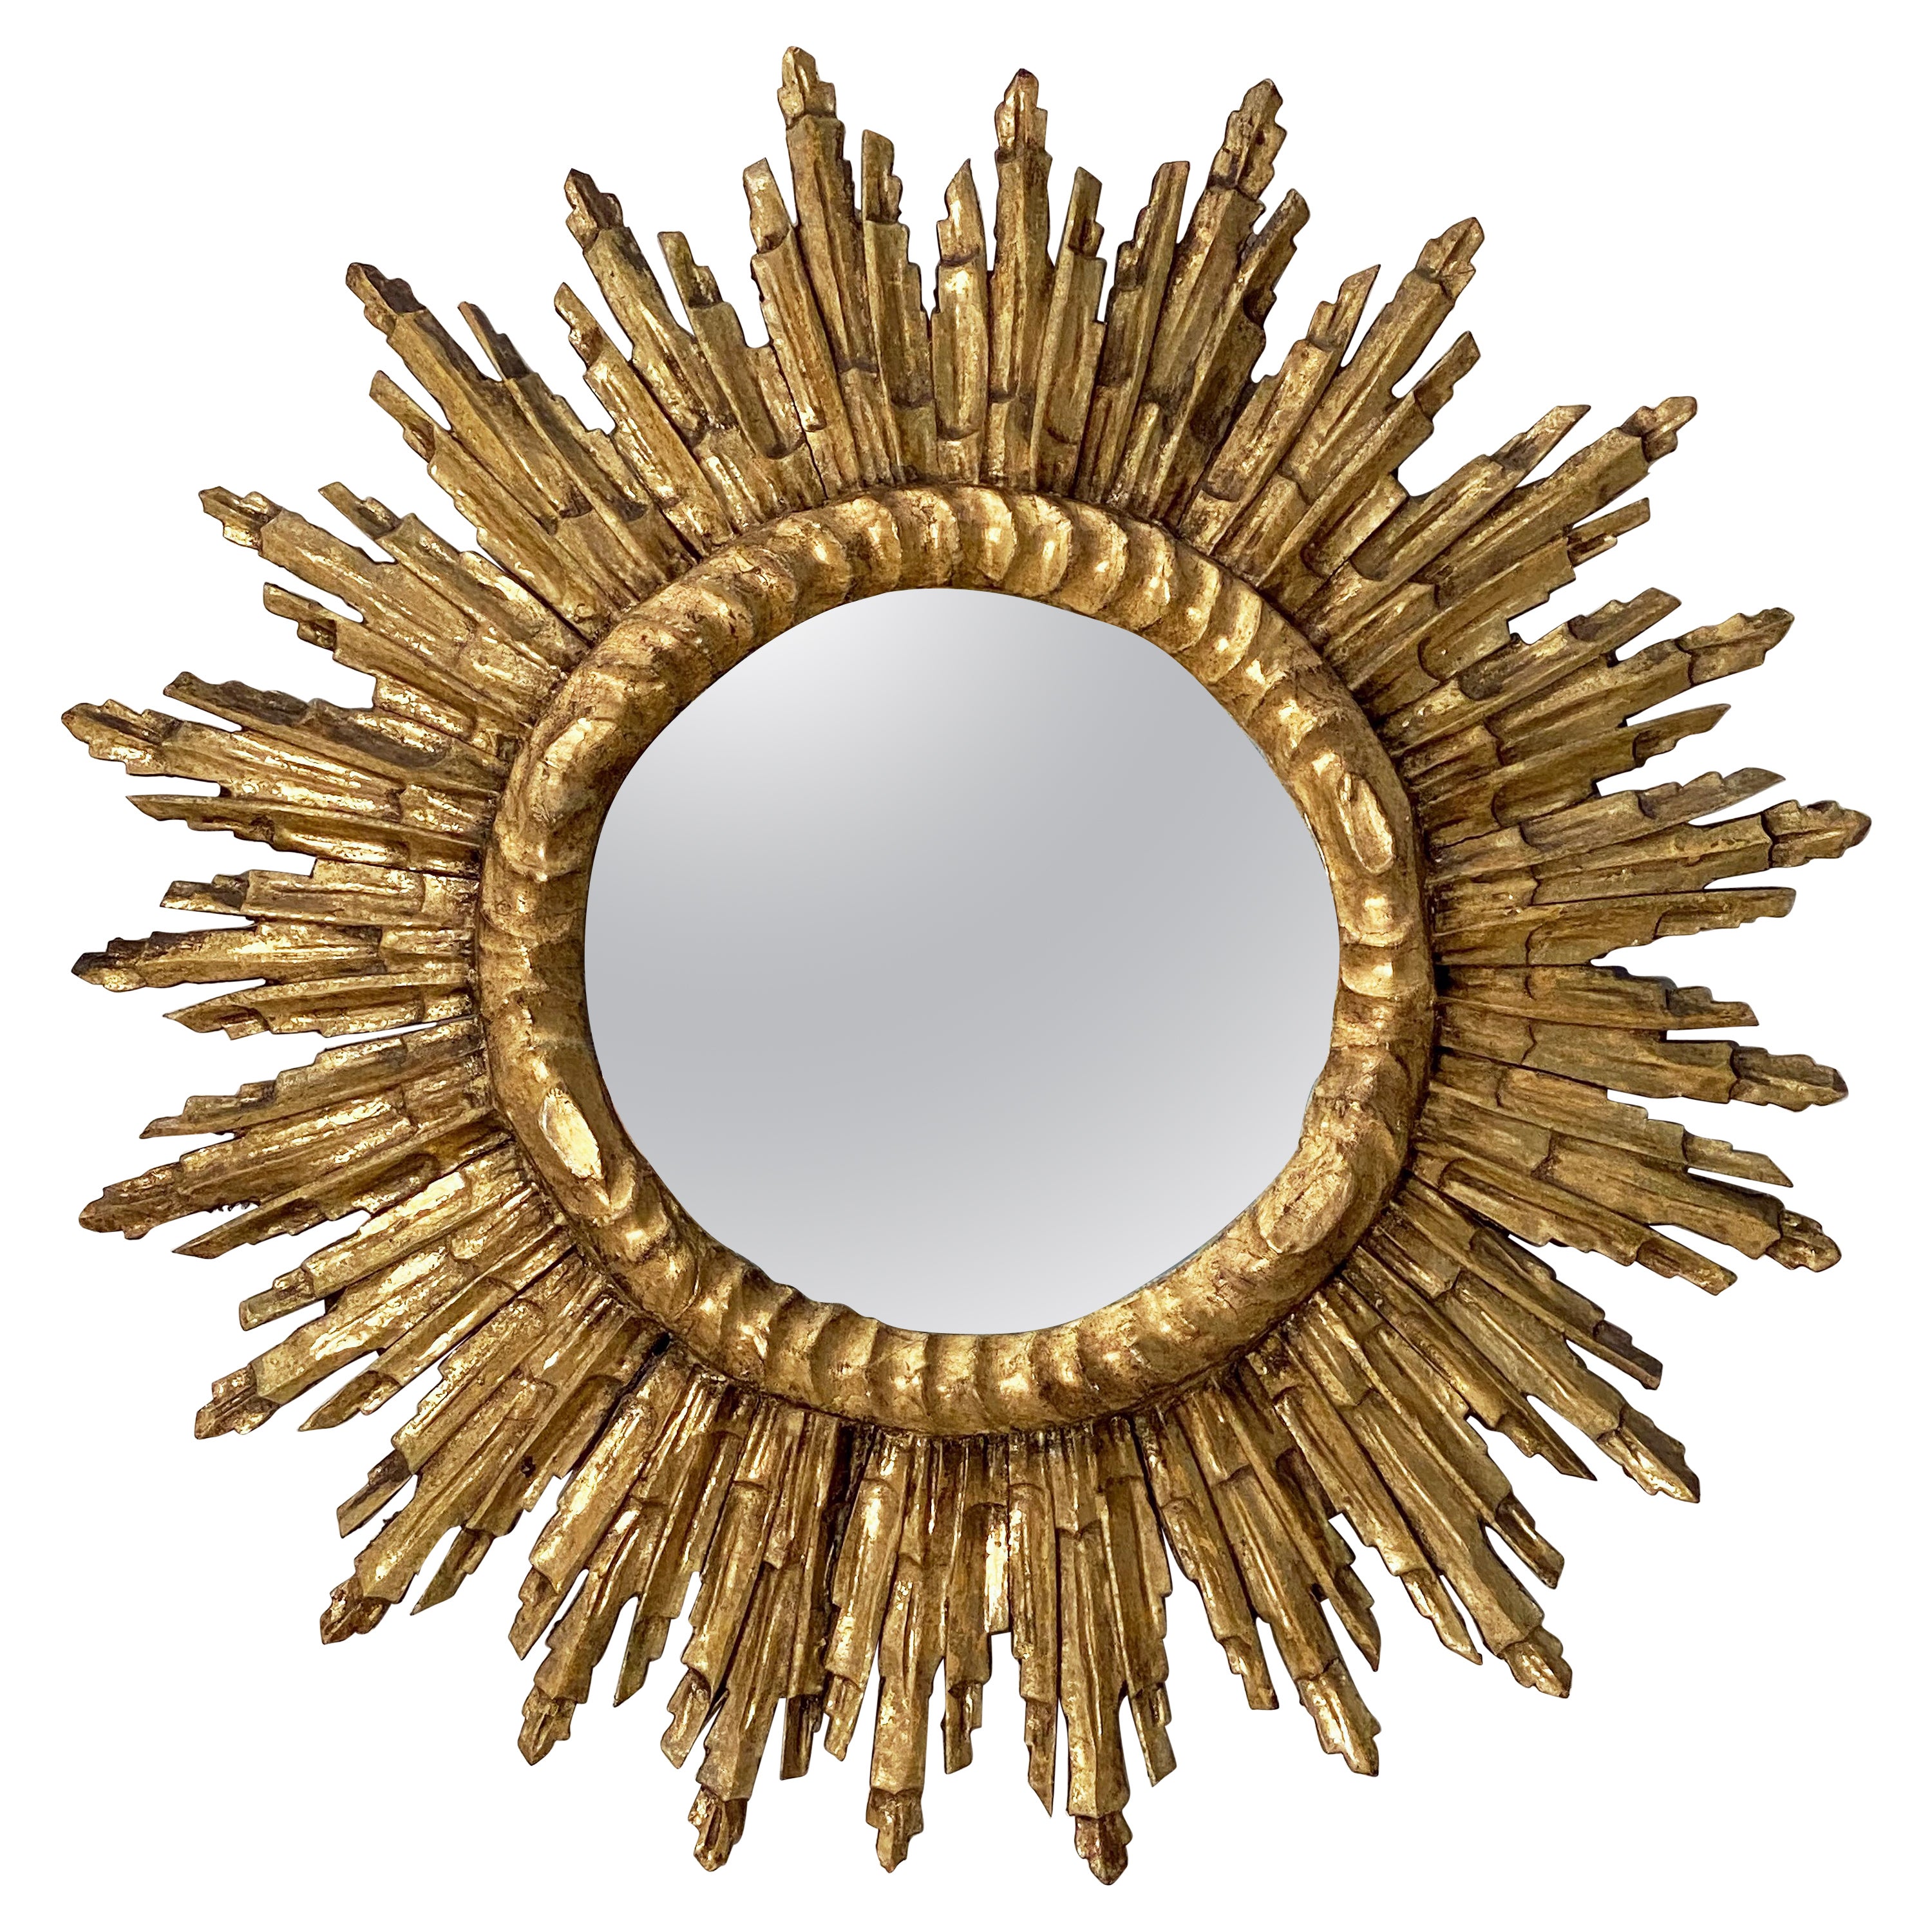 French Gilt Sunburst or Starburst Mirror (Diameter 27 1/2)